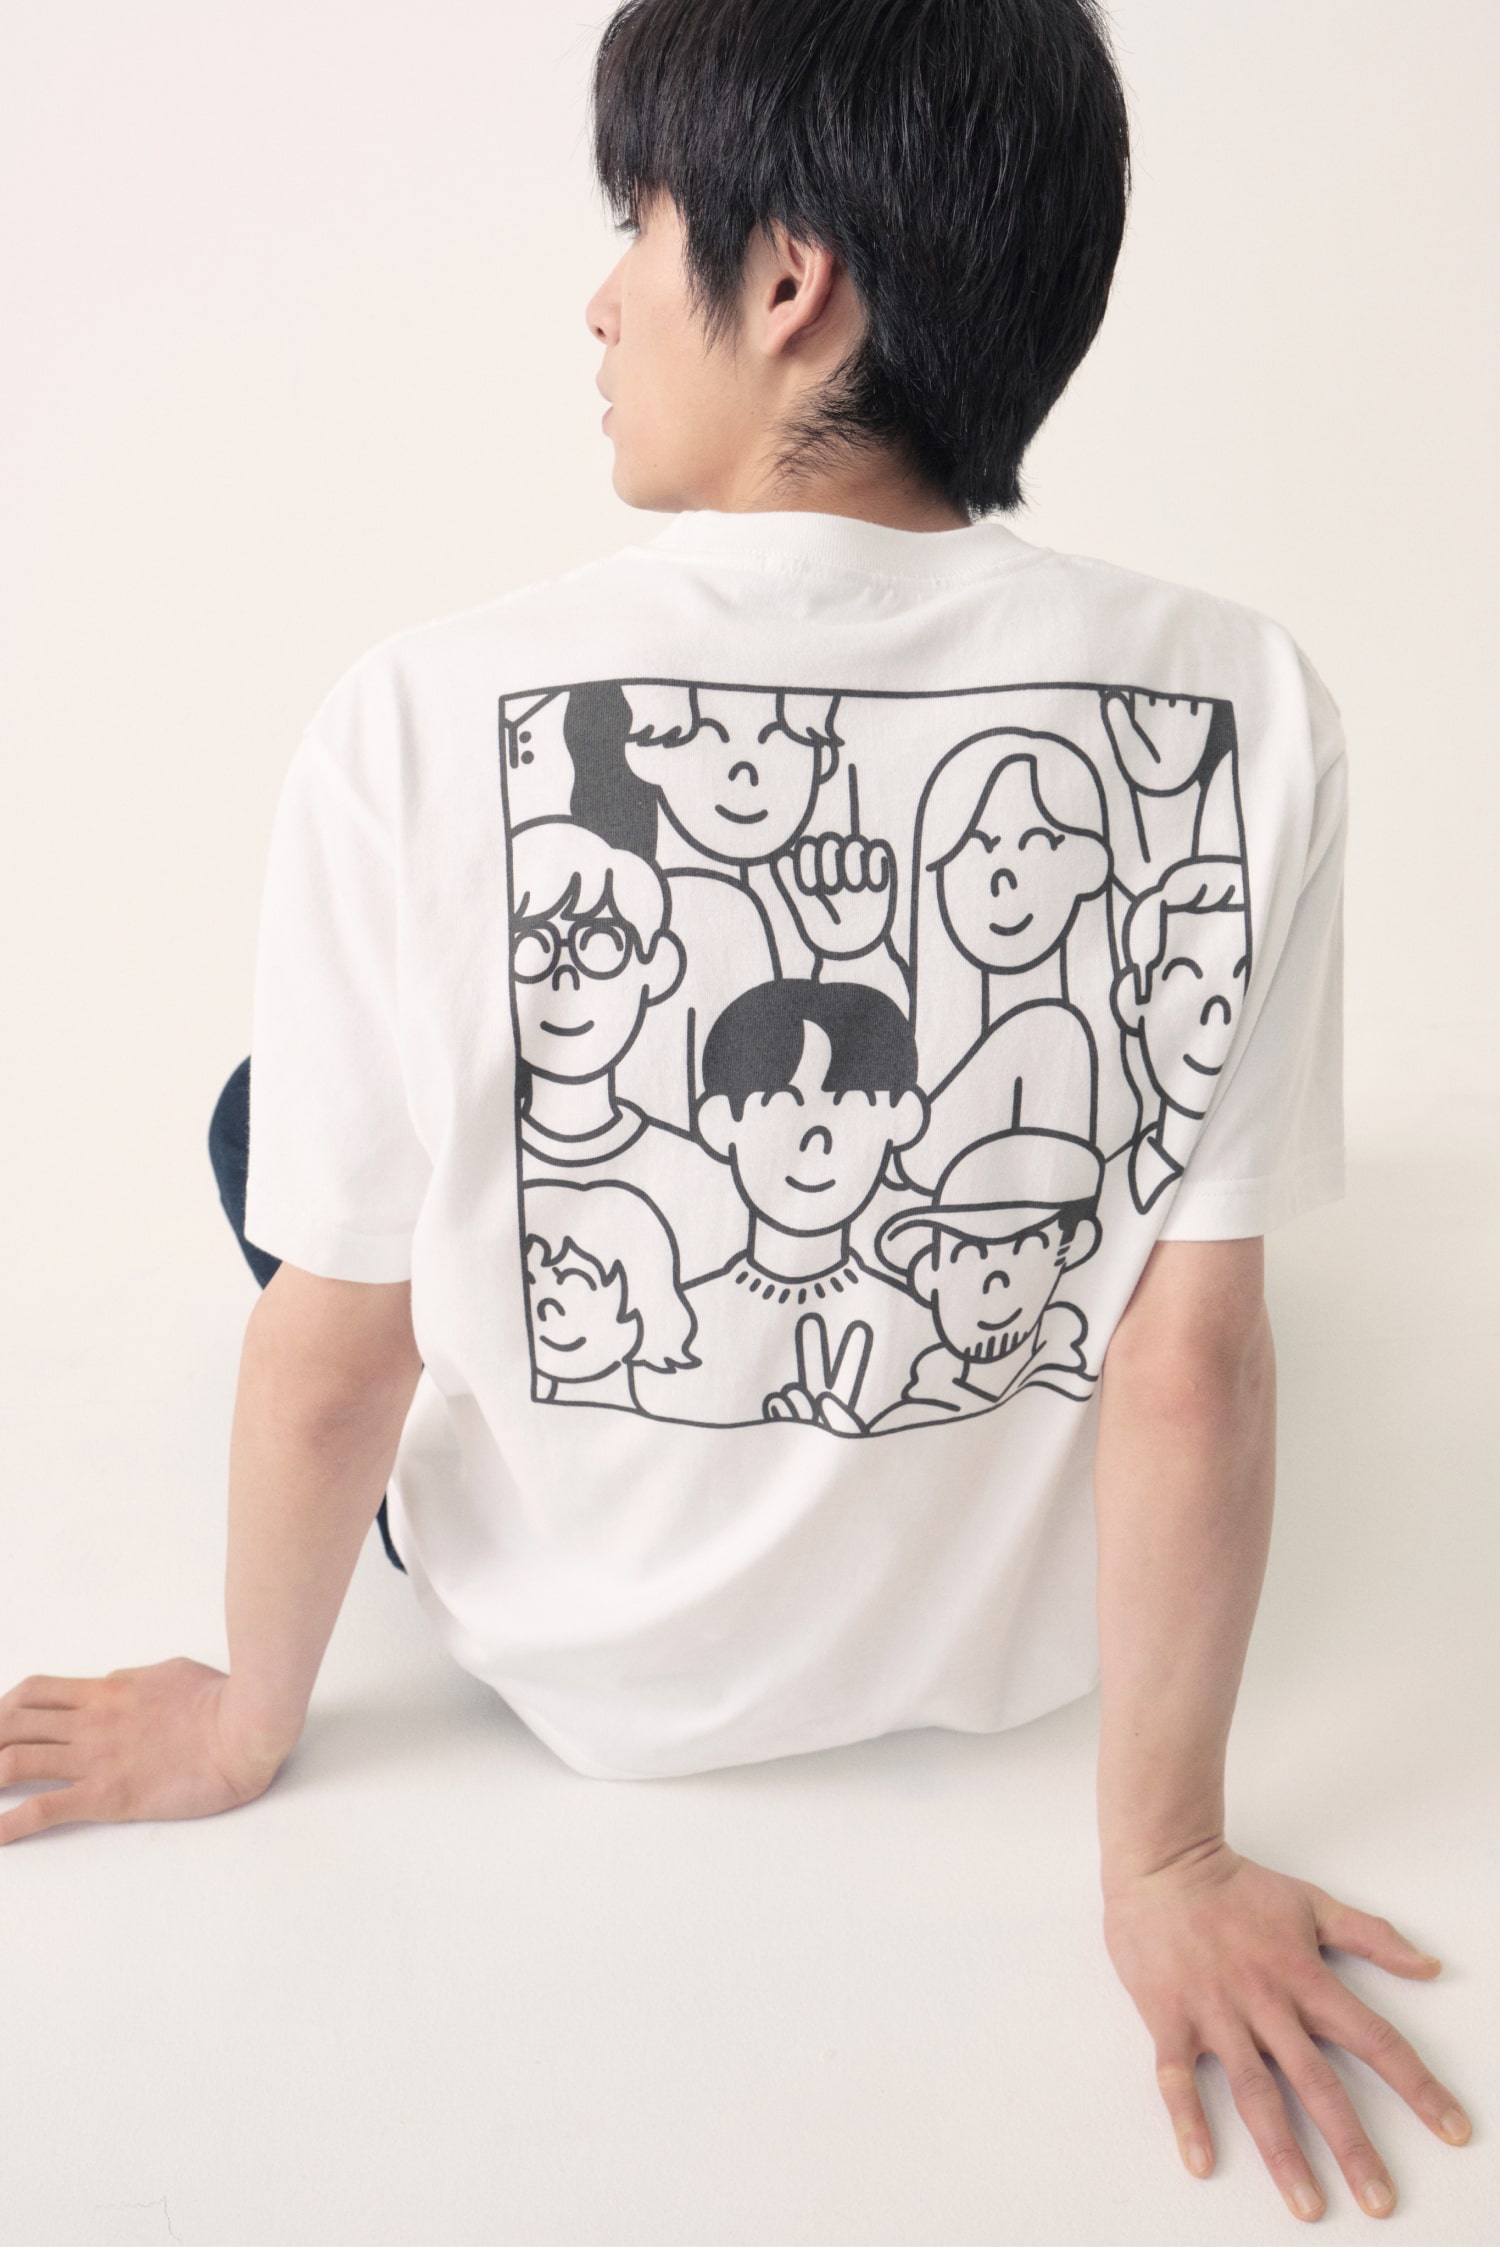 SUZURI’s Heavyweight T-shirt